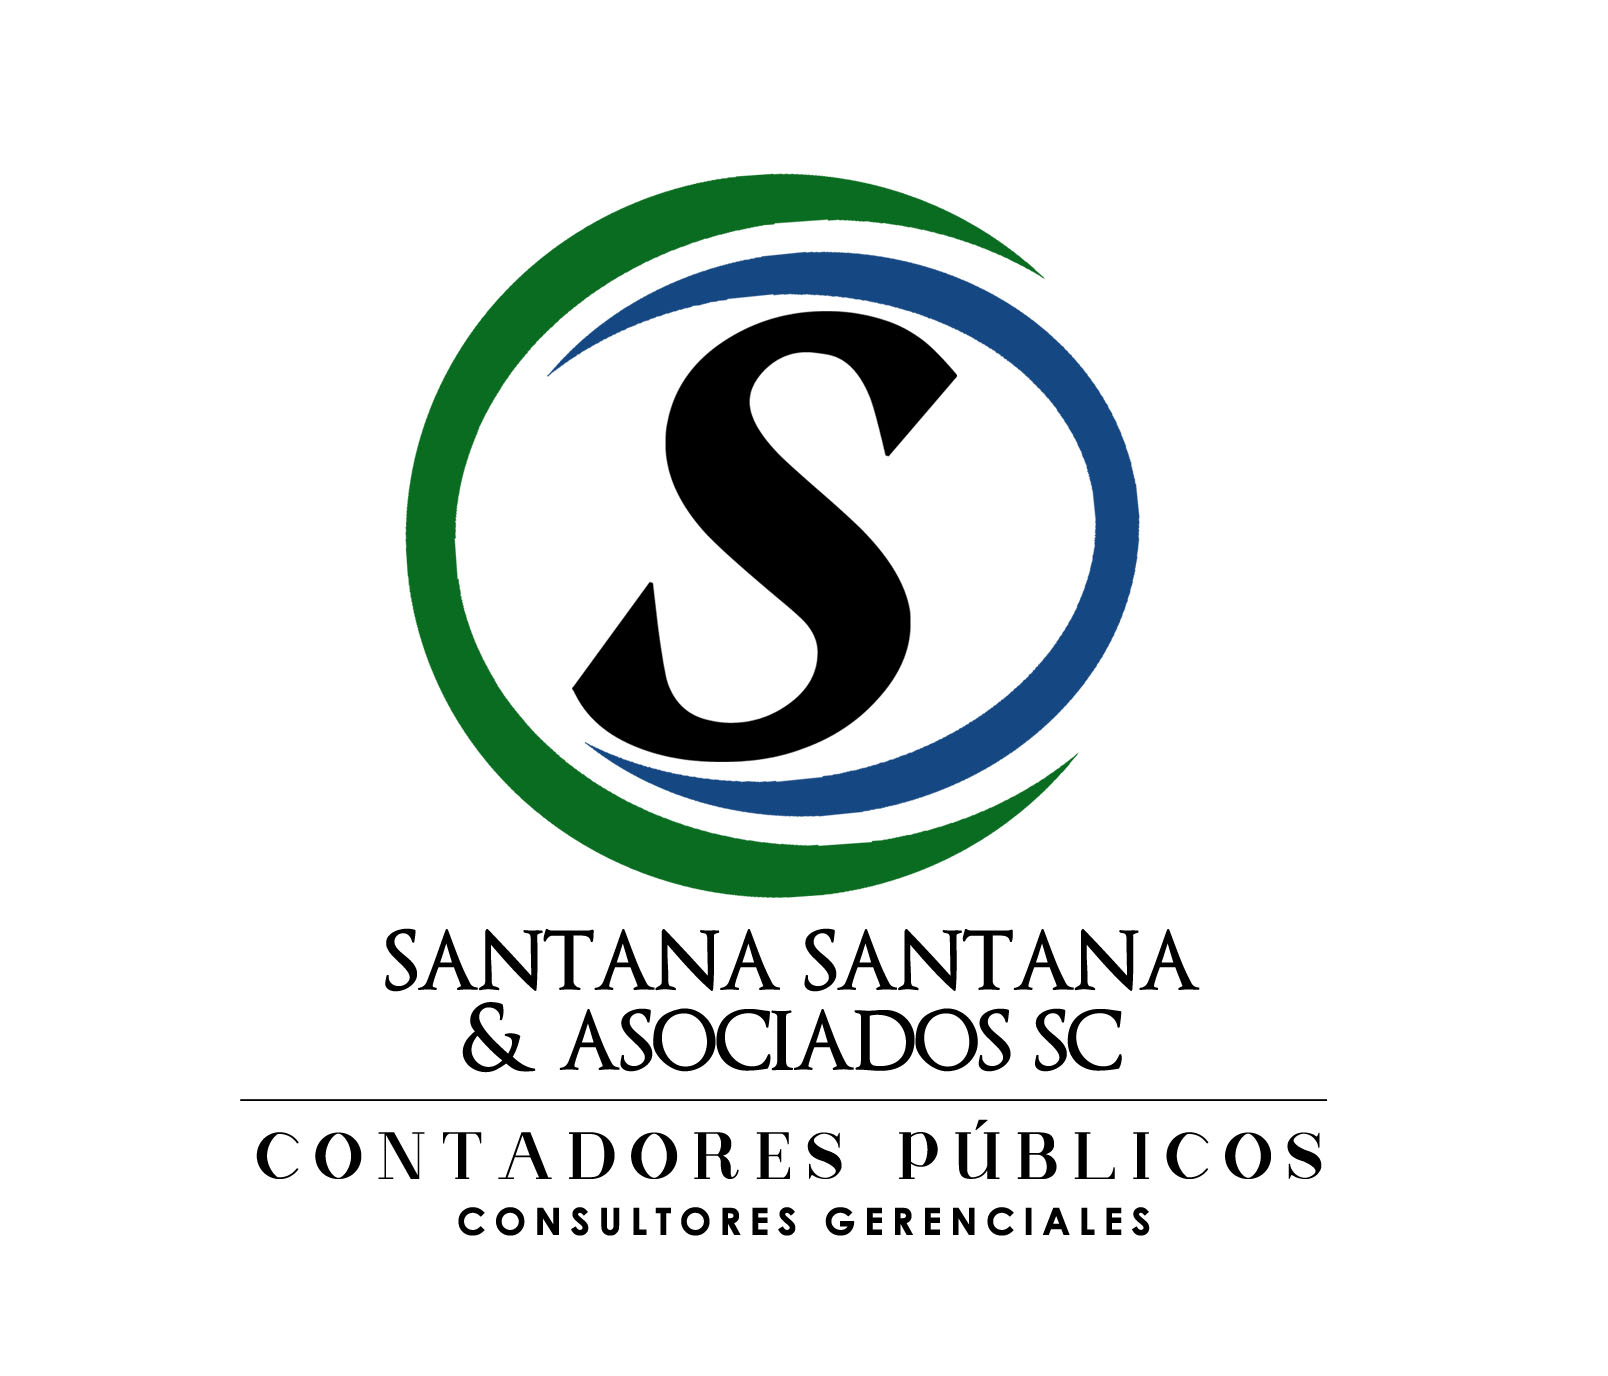 Santana - Santana & Asociados. SC.